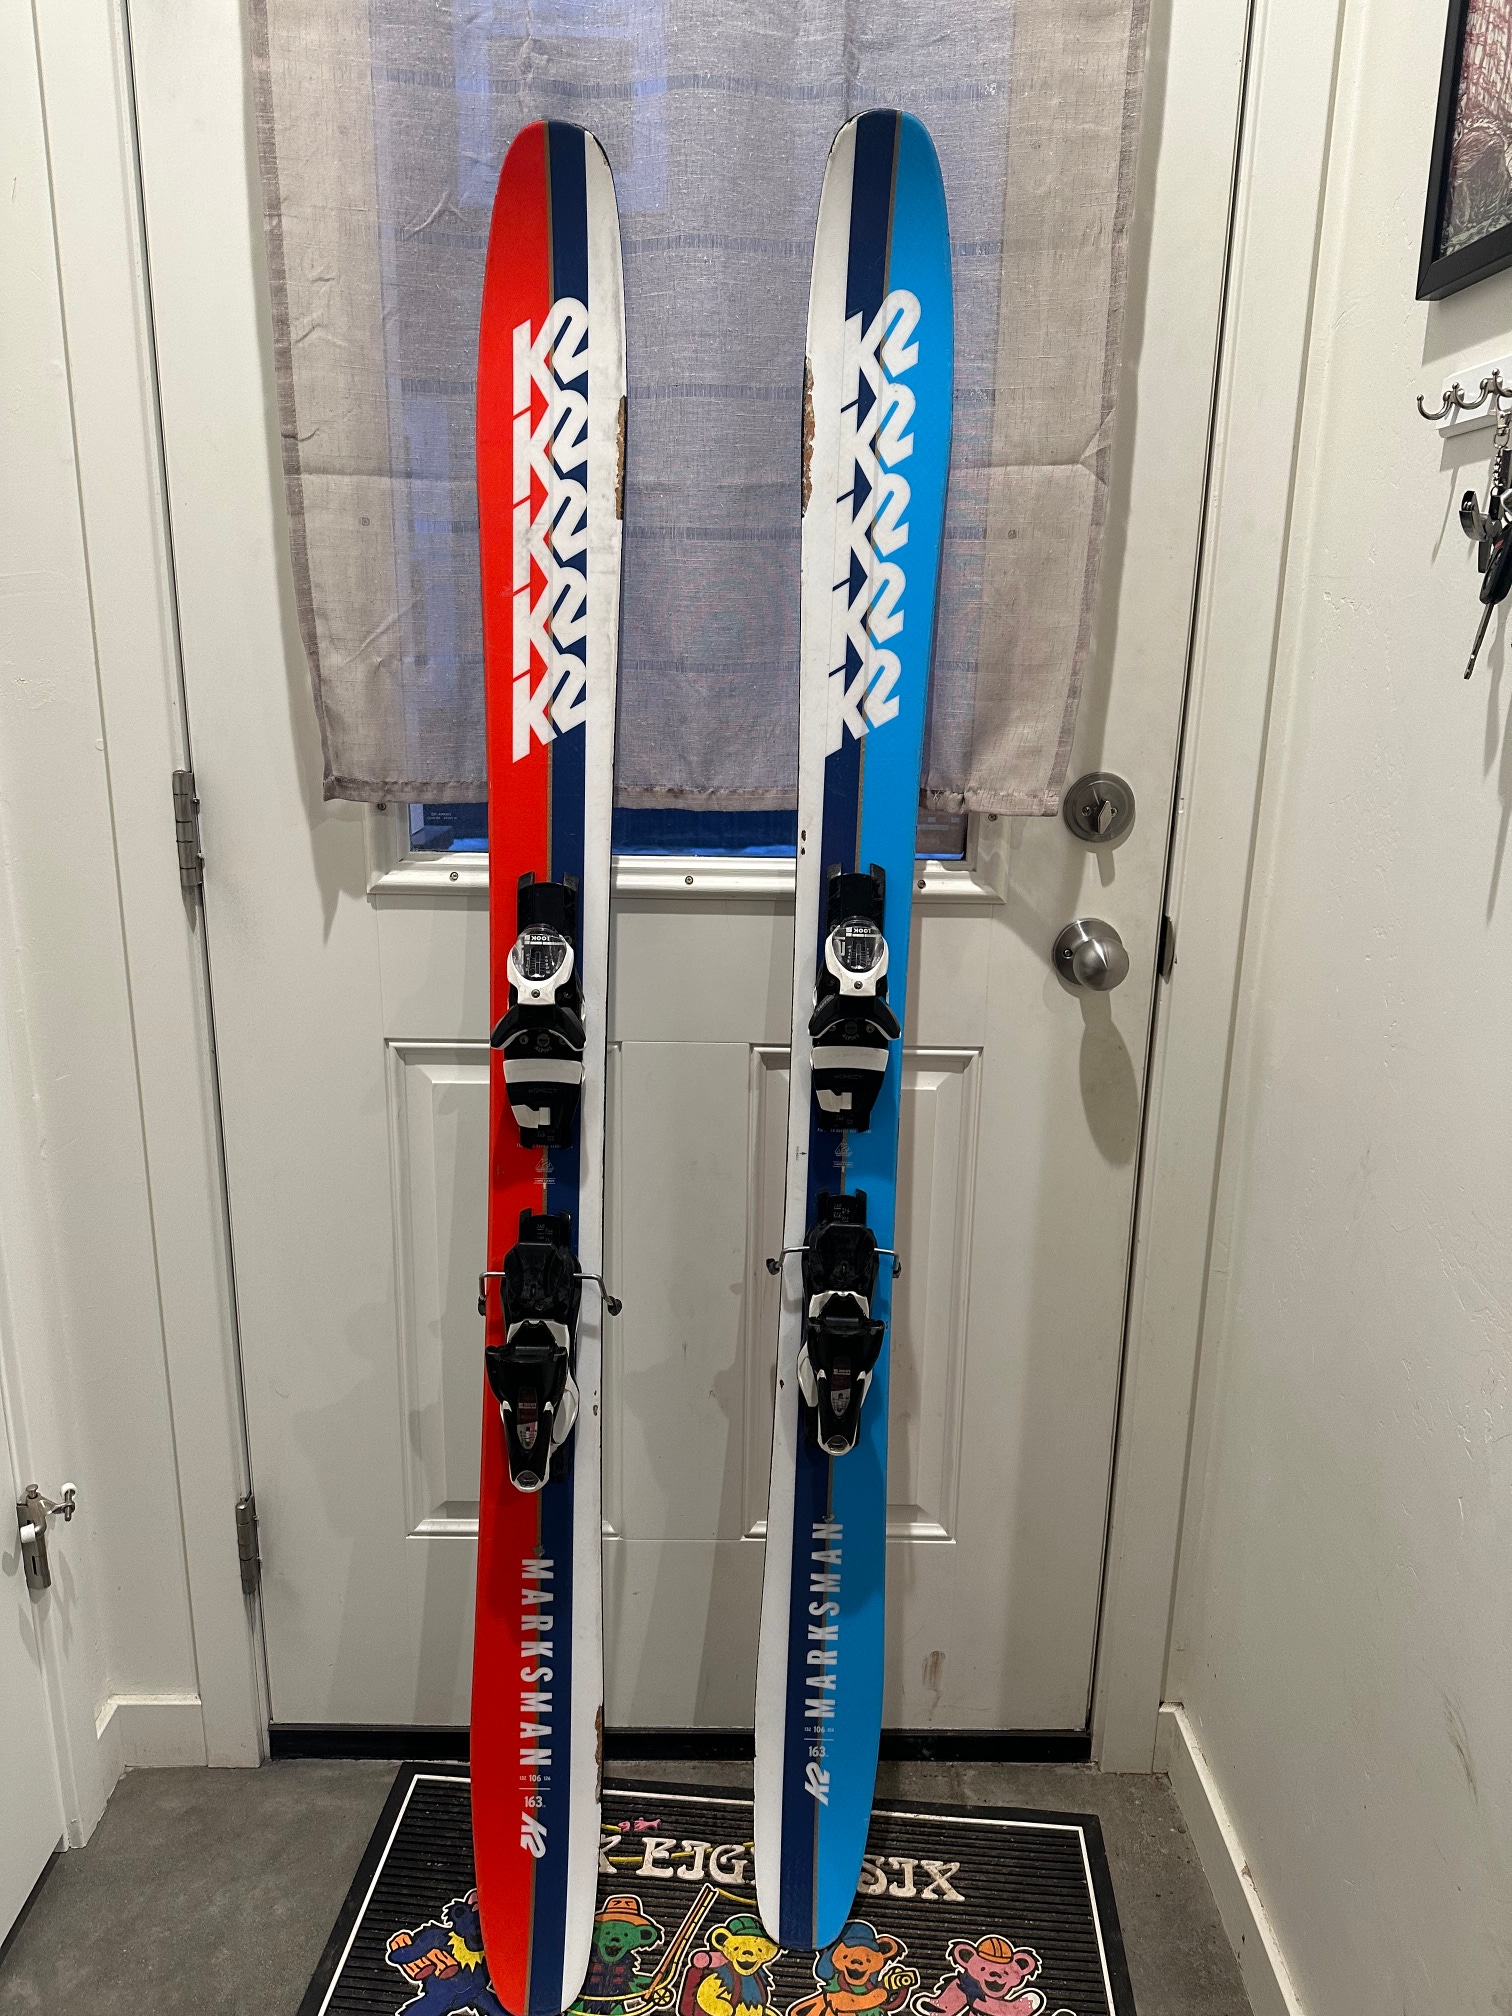 Used 2019 K2 164 cm Marksman Skis With Look demo Bindings